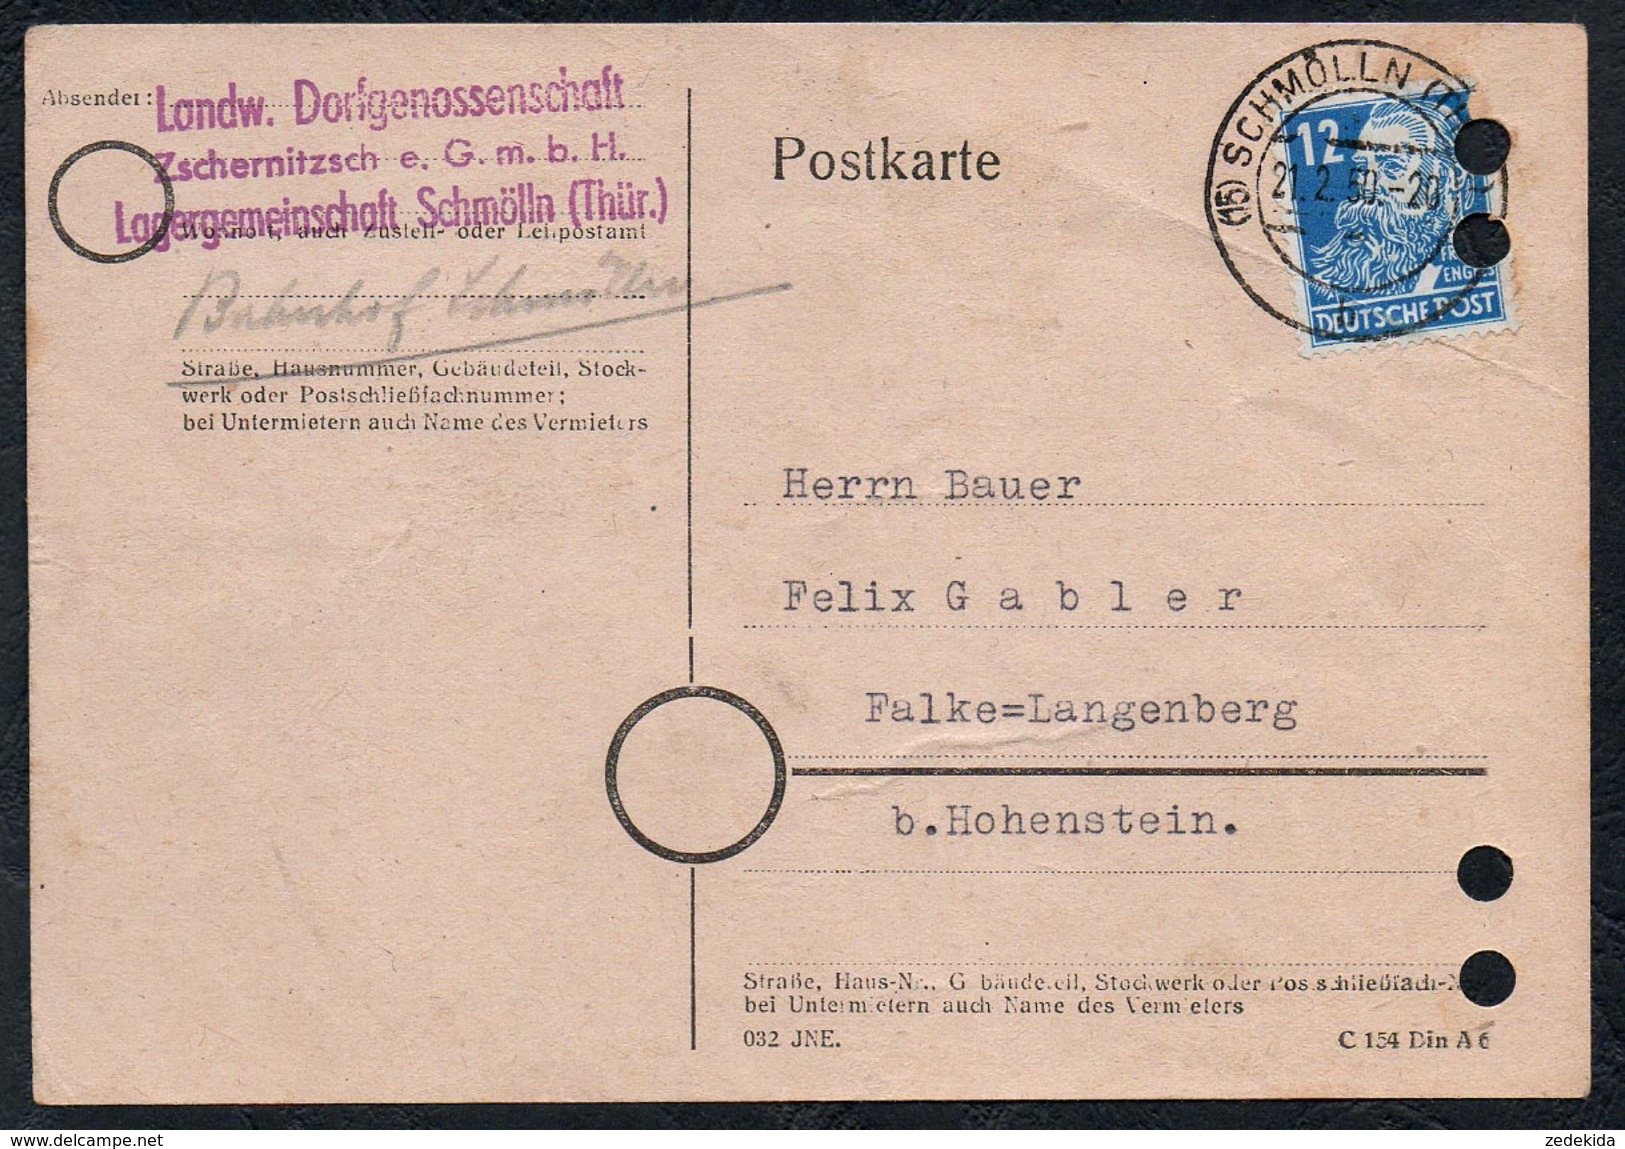 A6215 - Alte Postkarte - Bedarfspost - Schmölln - Landw. Dorfgenossenschaft - Nach Falke Langenberg 1950 - Schmölln